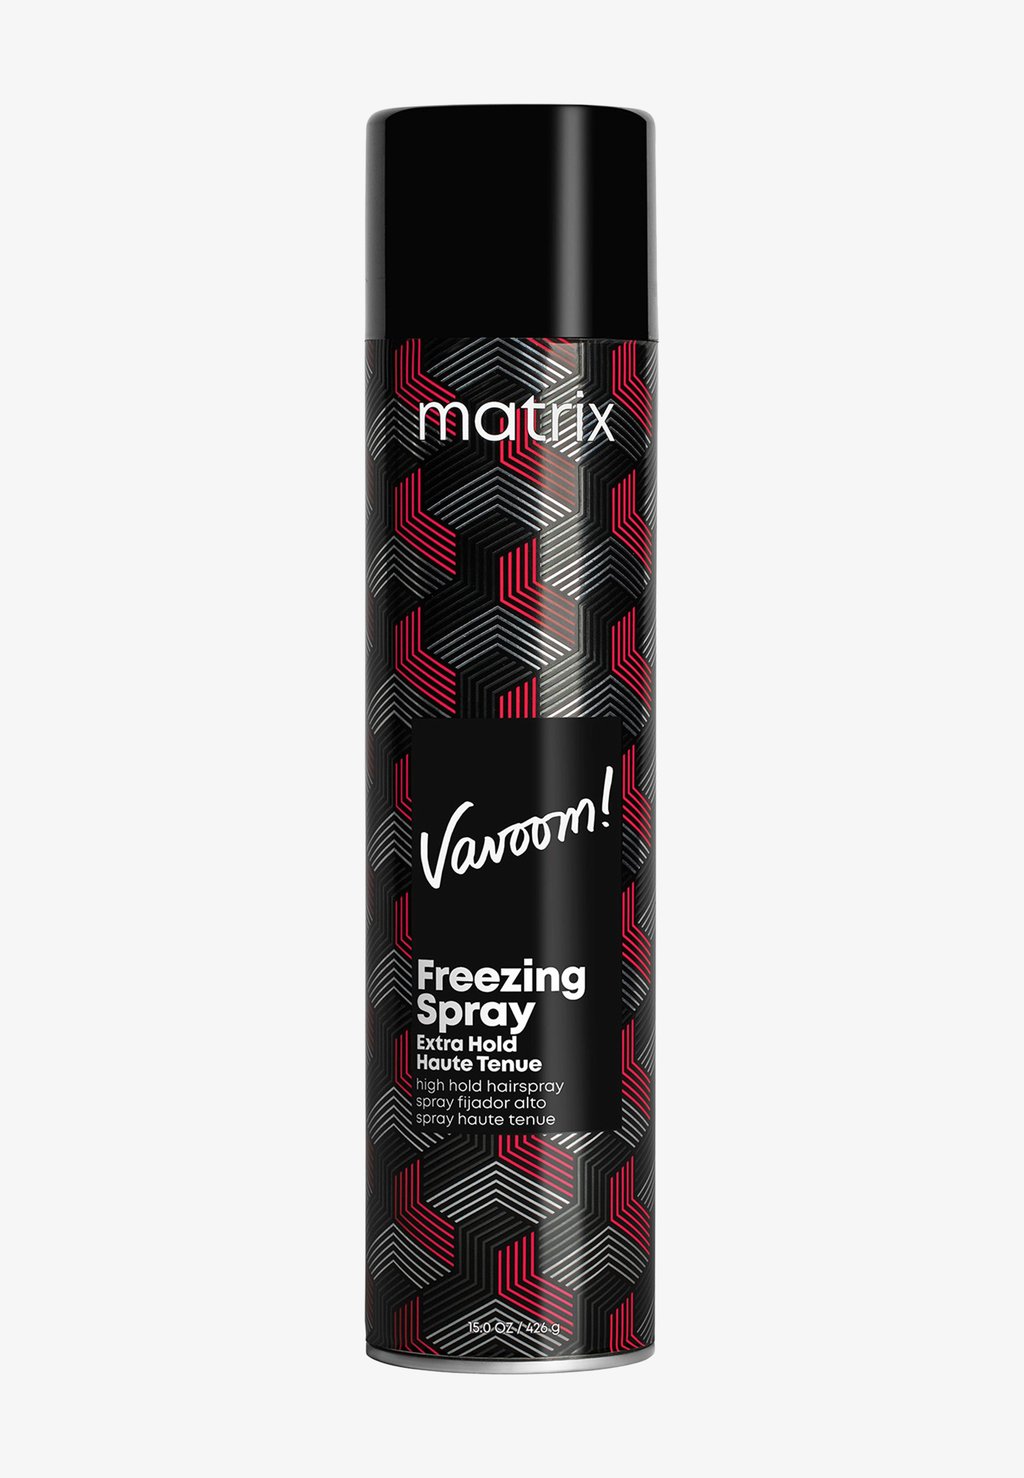 Стайлинг VAVOOM EXTRA HOLD SPRAY Matrix matrix vavoom freezing spray extra hold